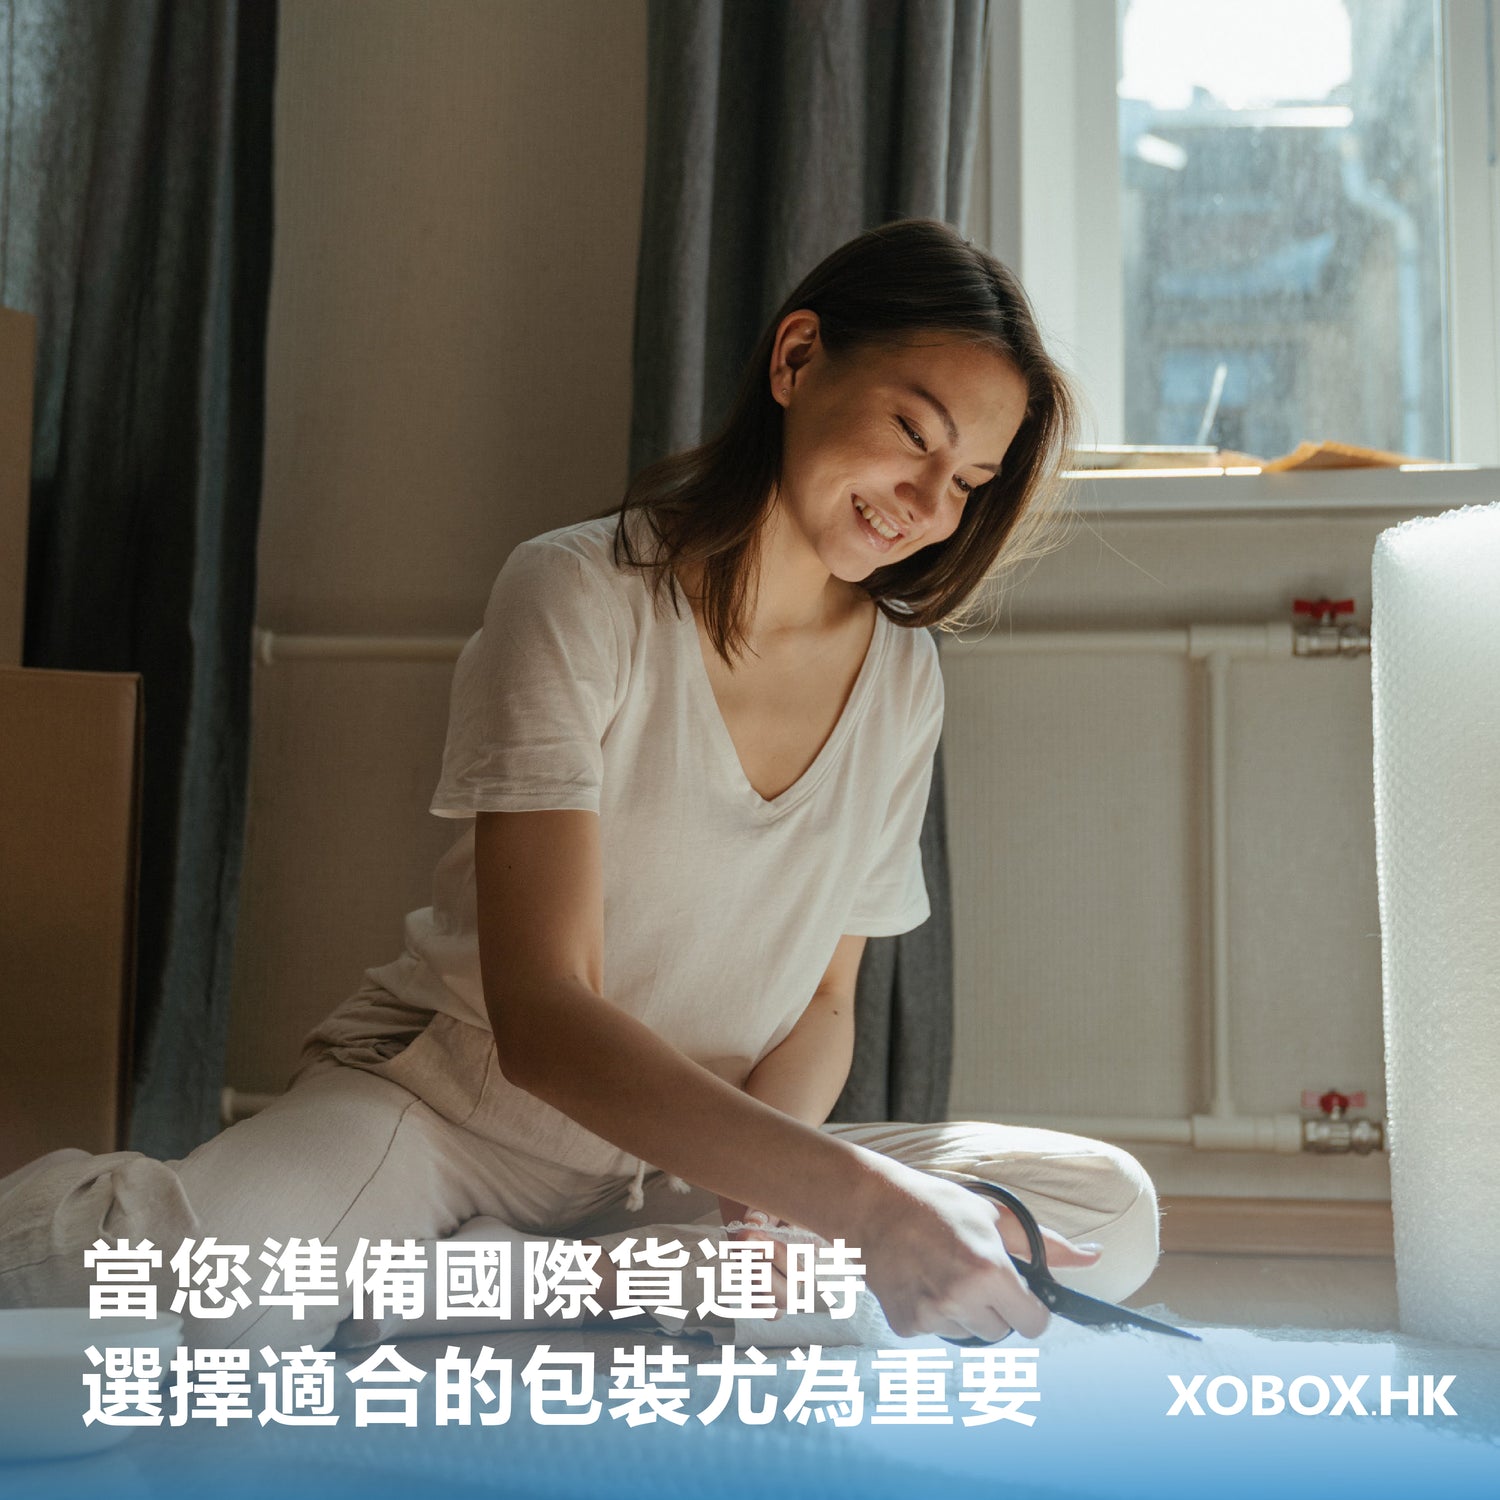 當您準備國際貨運時，選擇適合的包裝箱尤為重要。| XOBOX.HK